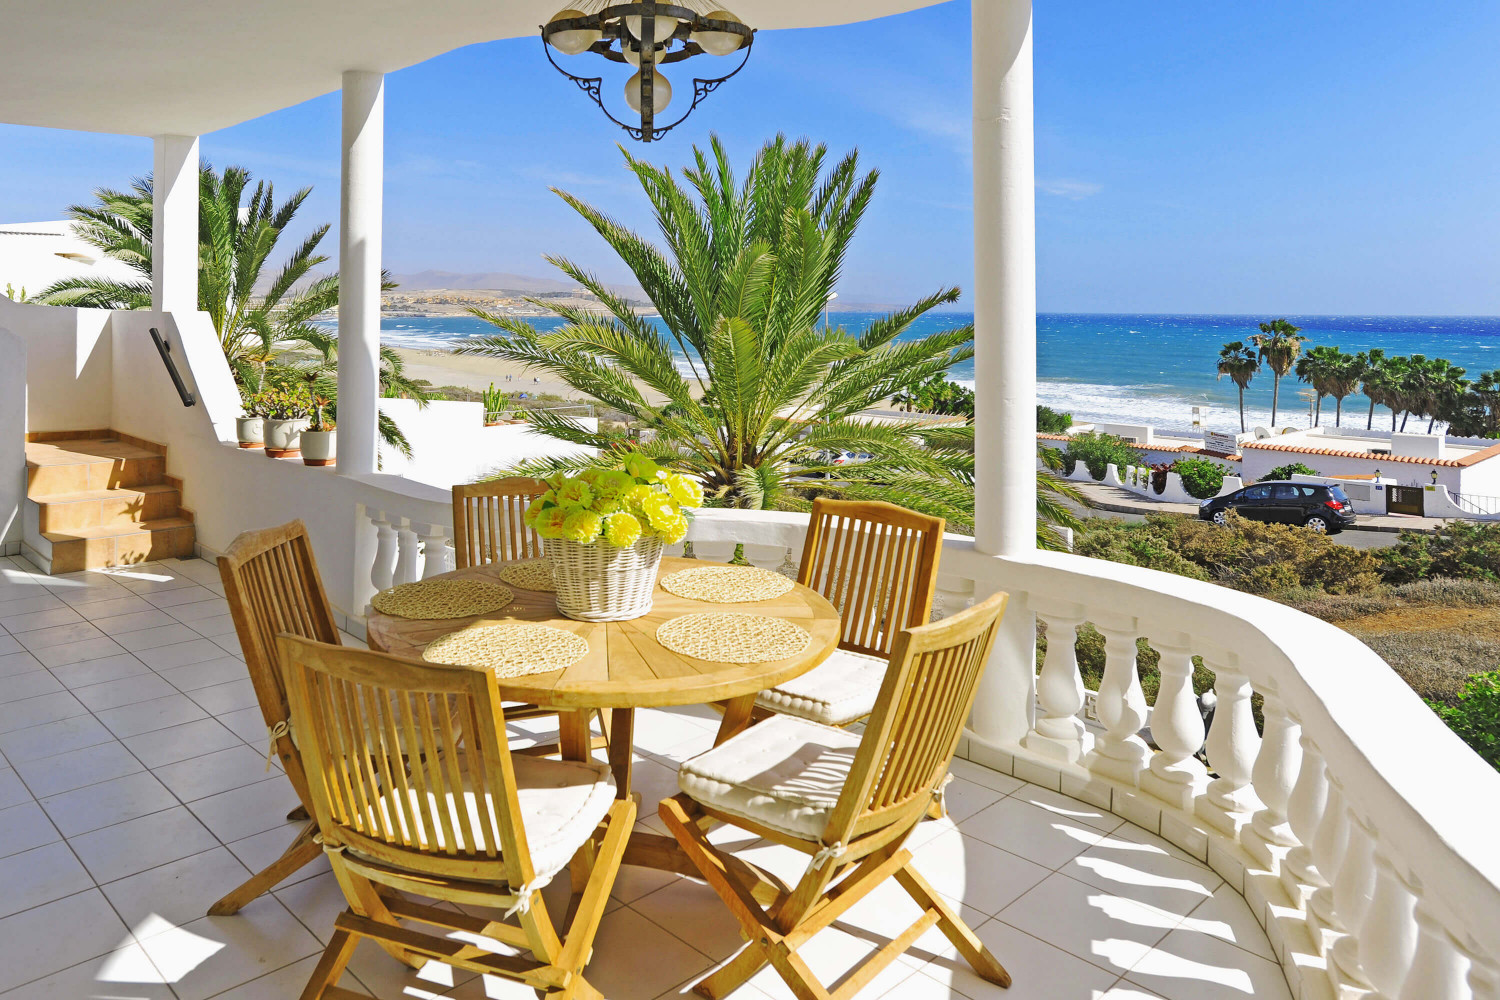 Krásný prázdninový dům na pláži v Costa Calma, zařízený ve středomořském stylu, s nepřekonatelným výhledem